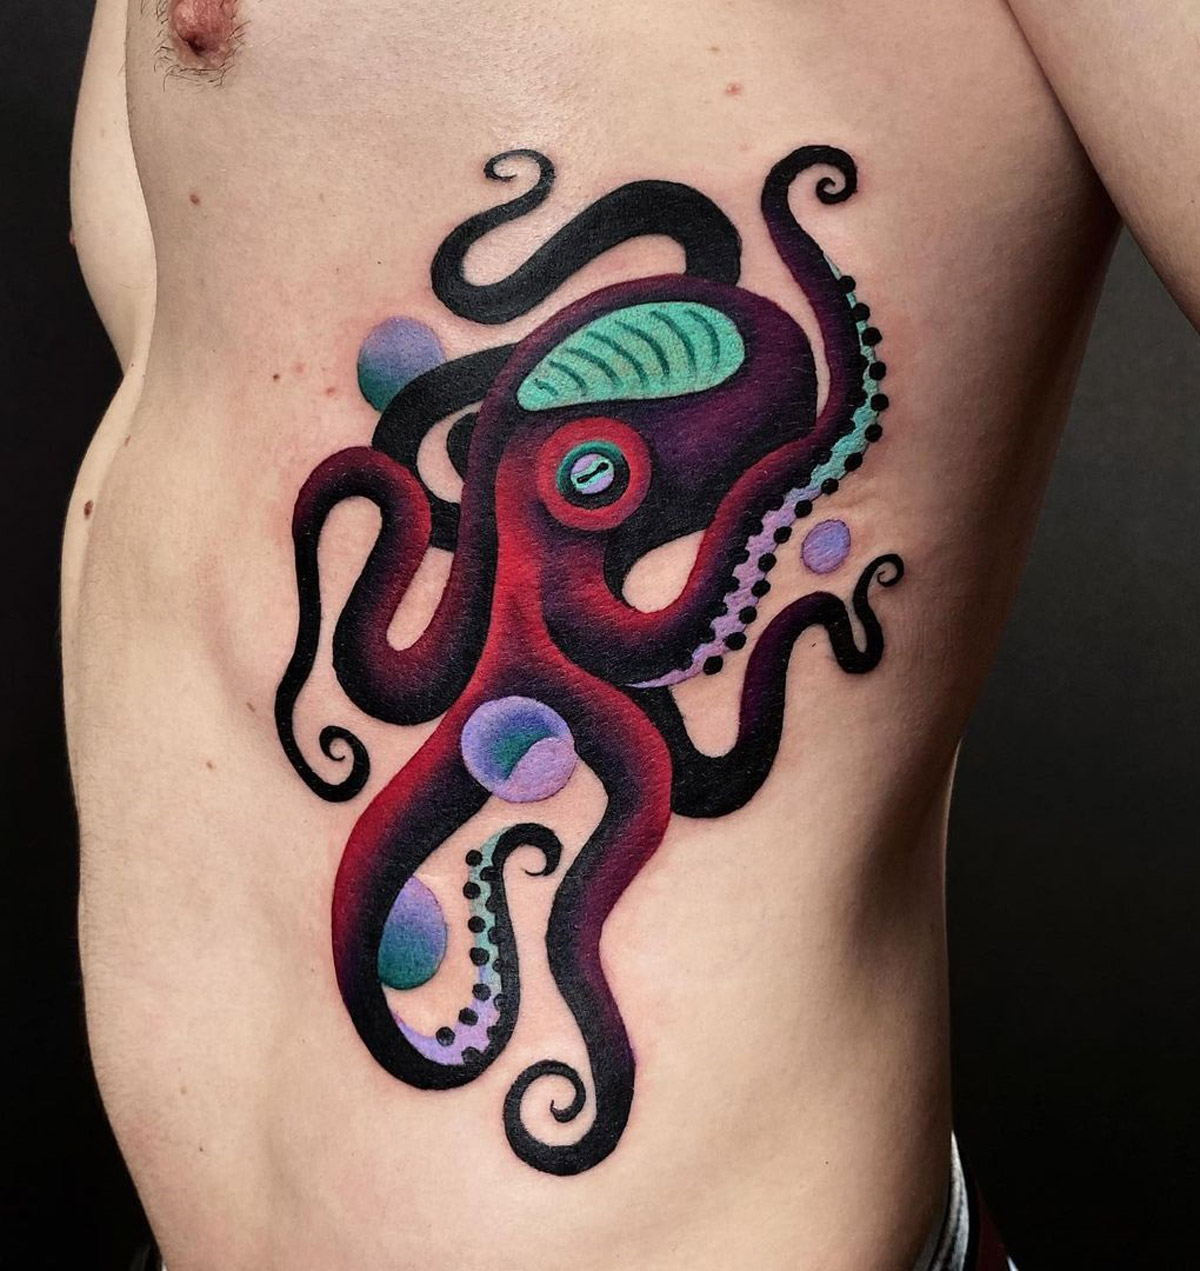 Octopus on Men's Ribs | Best Tattoo Ideas For Men & Women